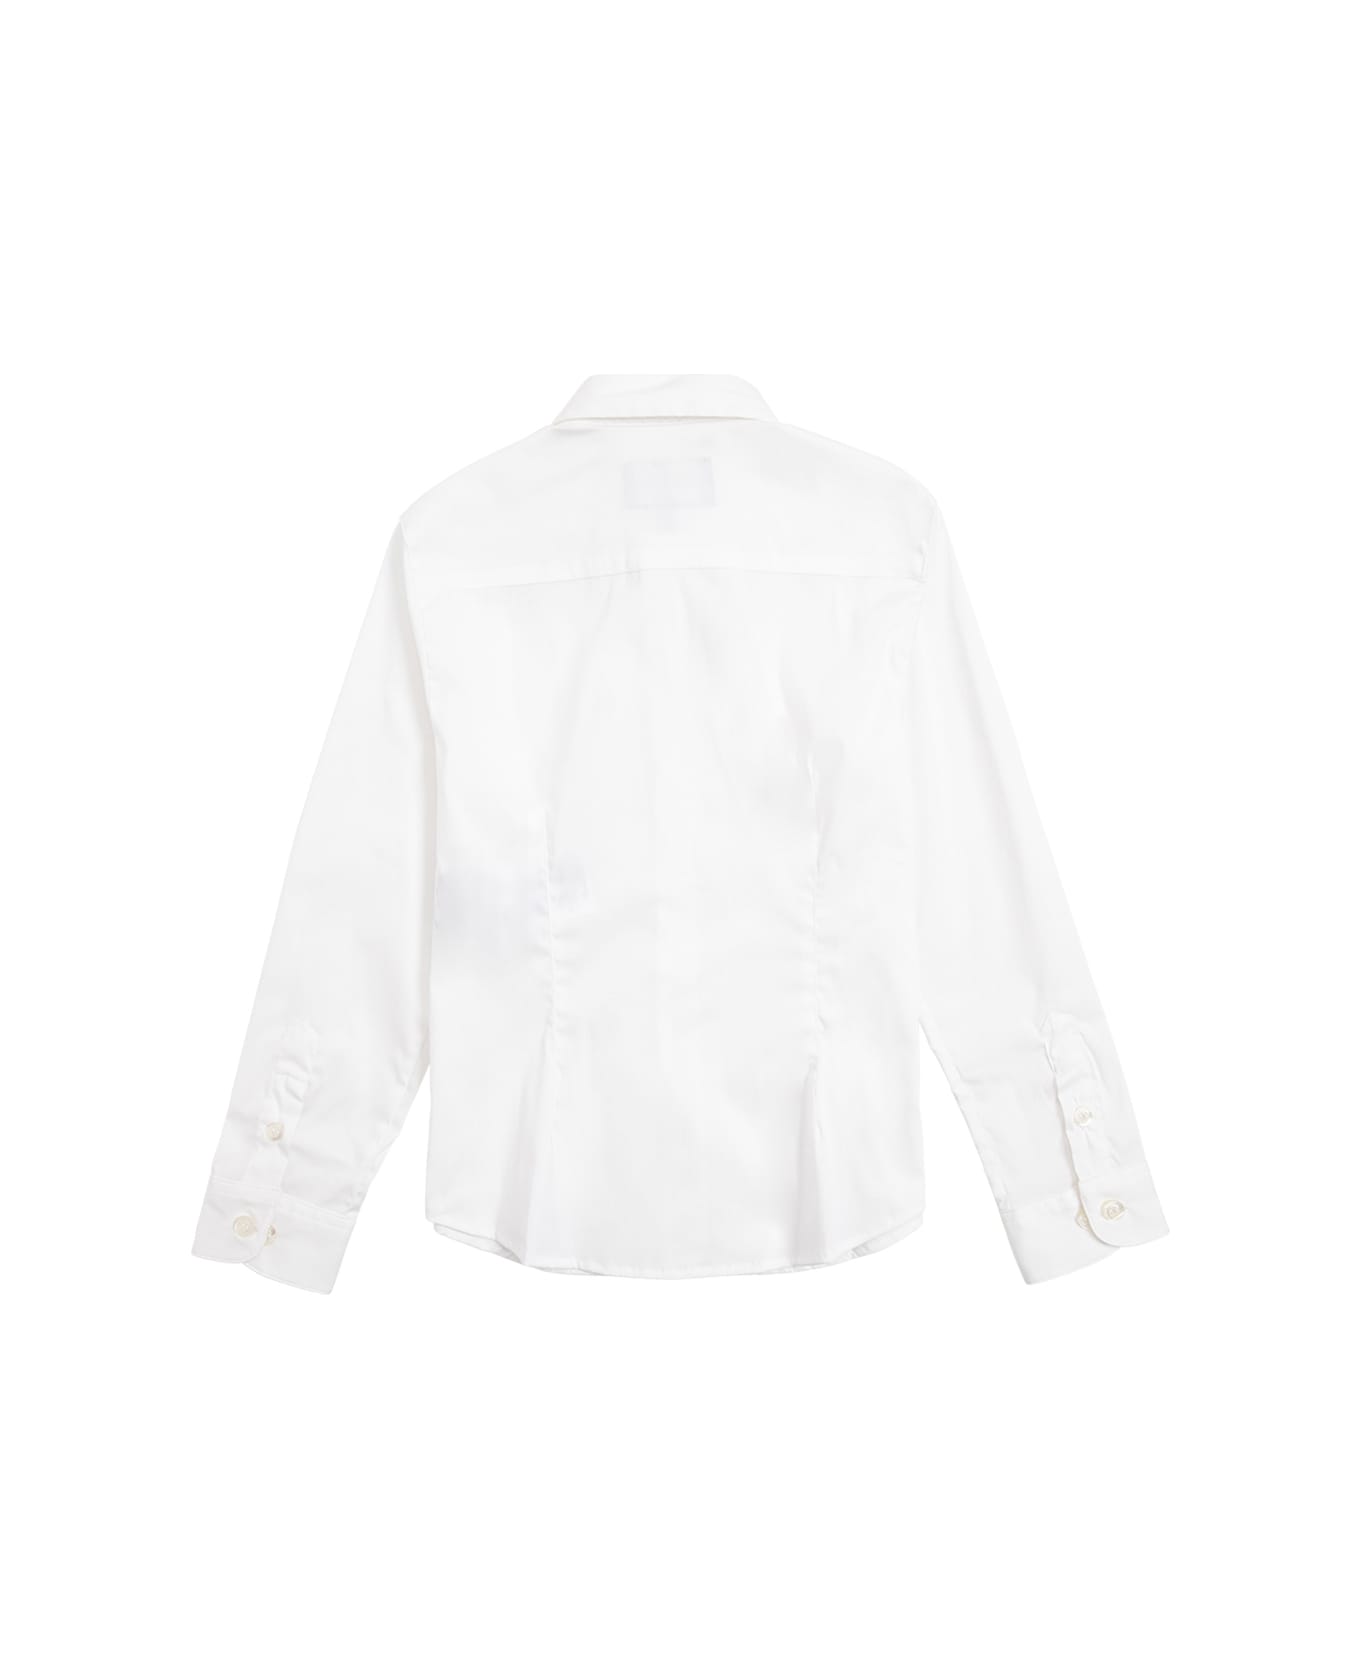 Emporio Armani White Cotton Poplin Shirt - Bianco ottico シャツ